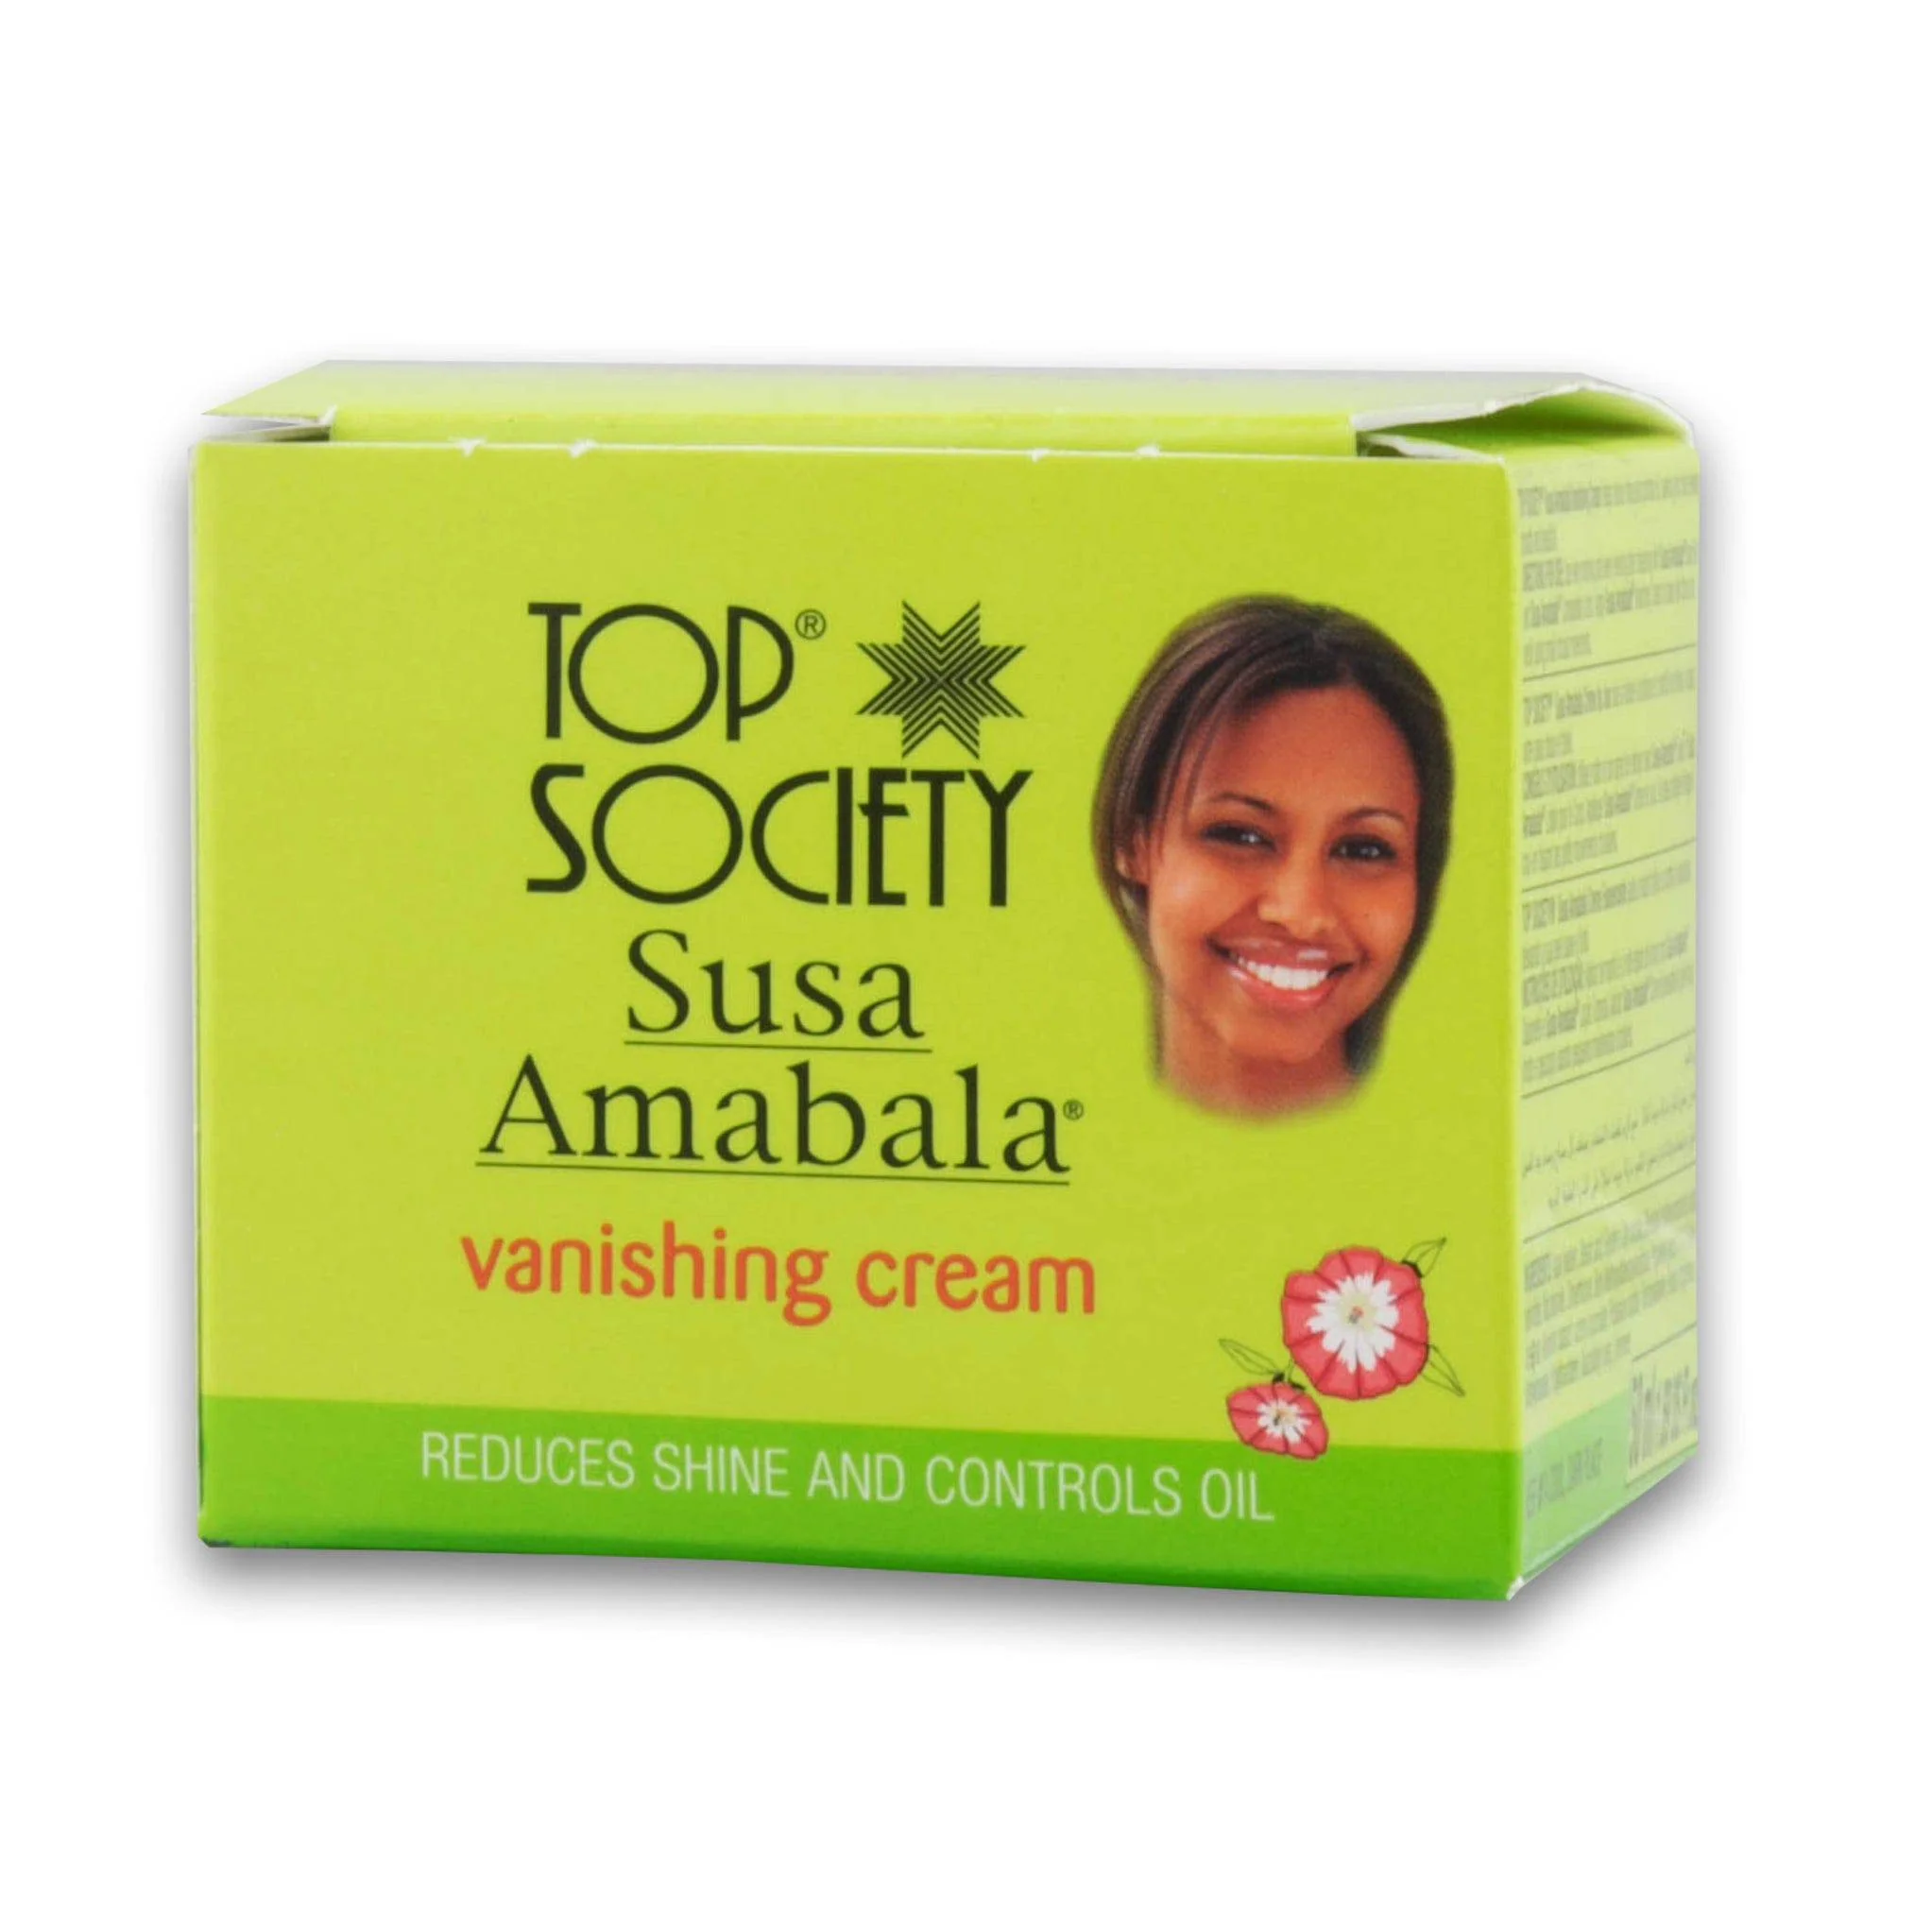 Top Society Susa Amabala Vanishing Cream 50G